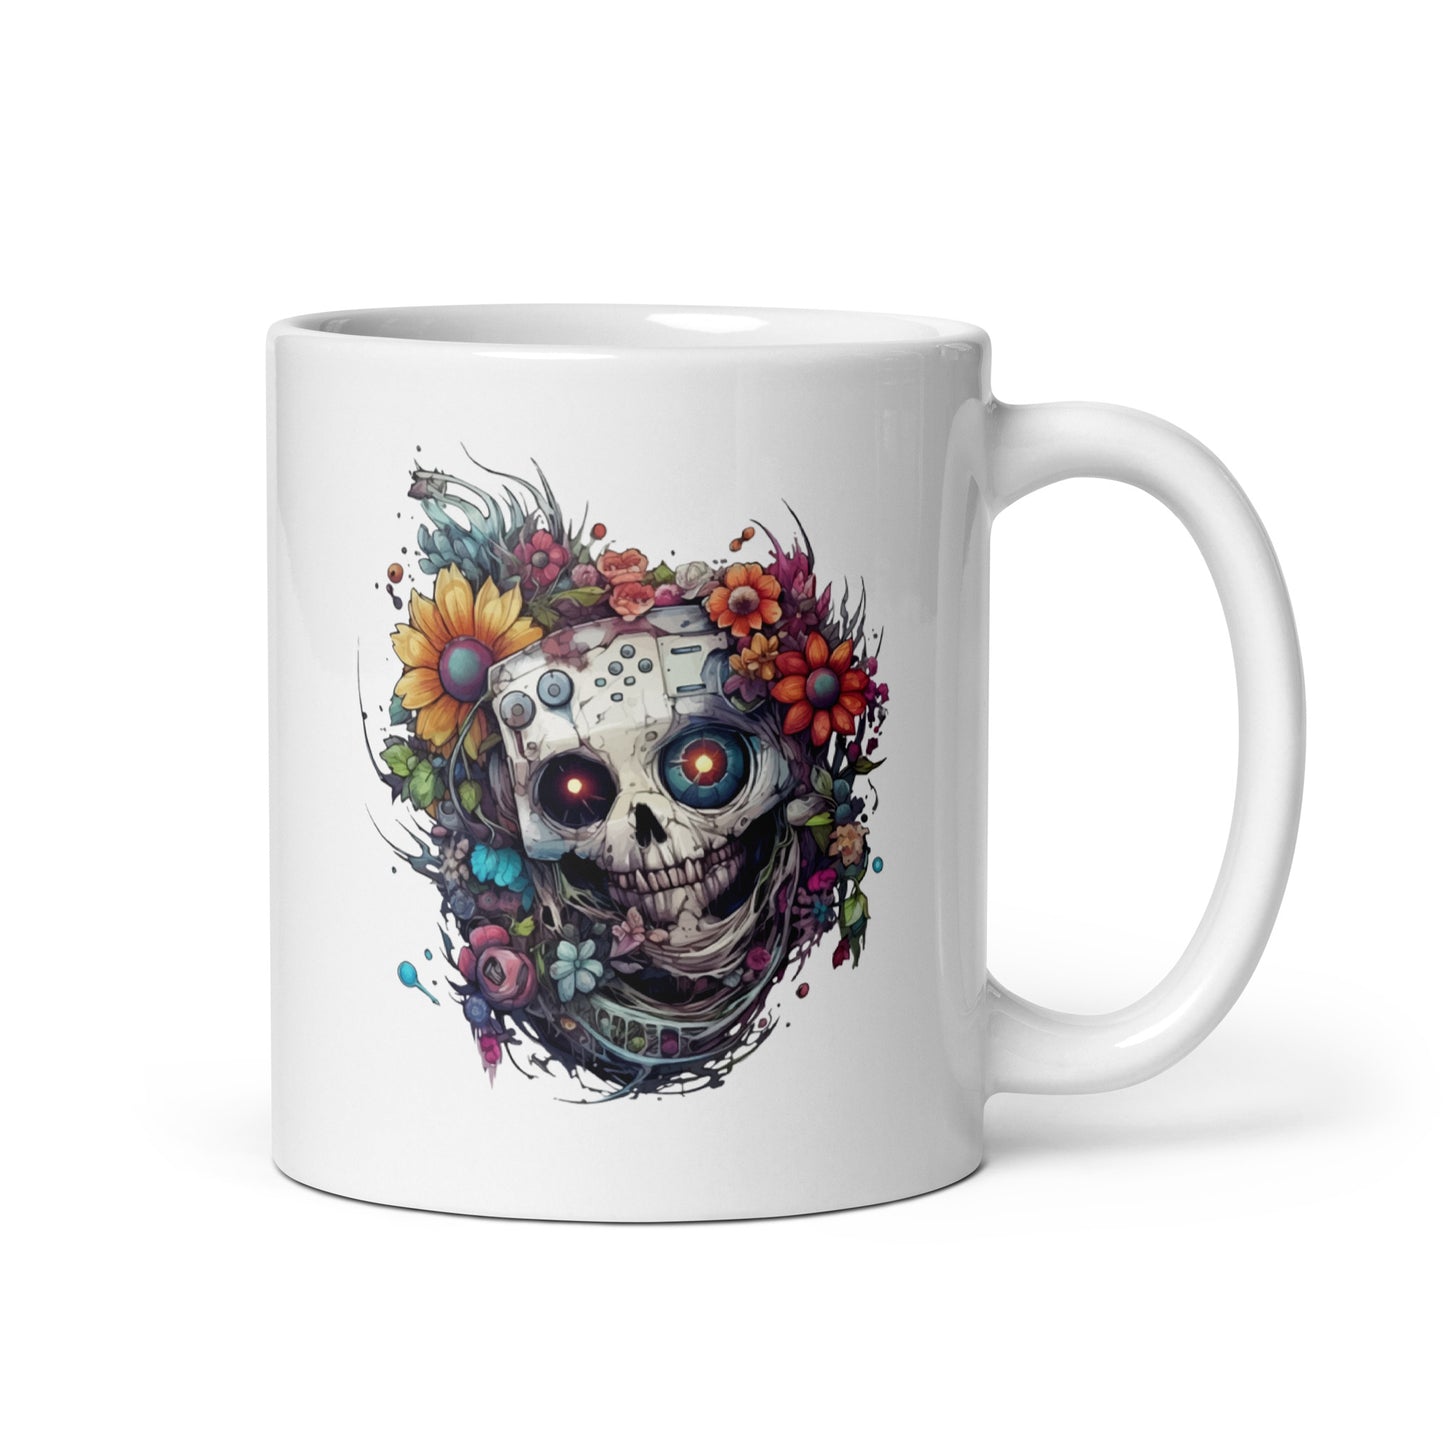 Monster skull and flowers, Hi-tech and cyberpunk design, Mutant skull fantastic illustration - White glossy mug